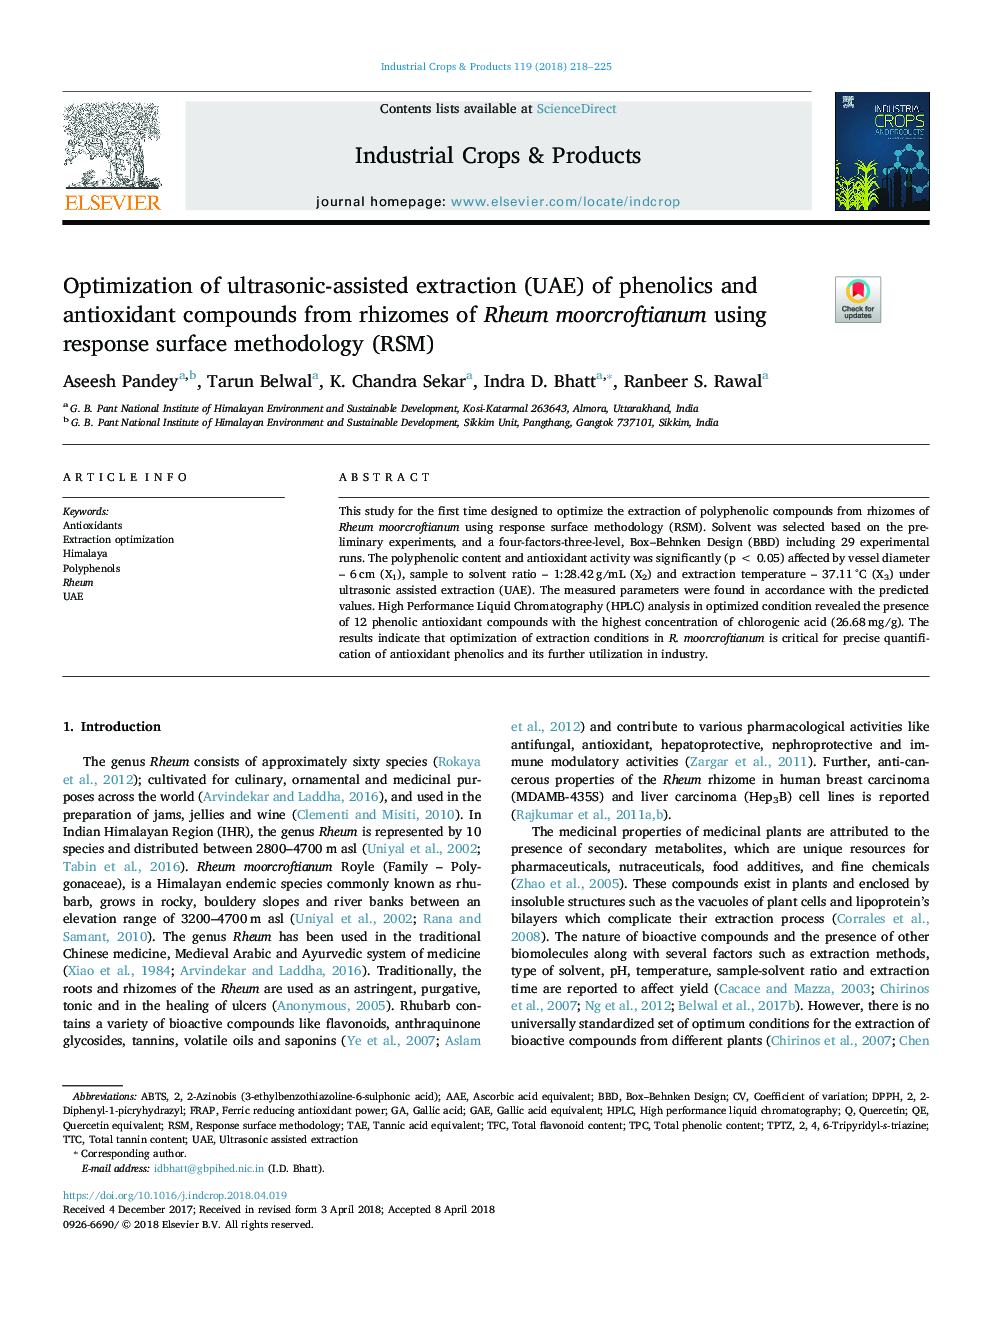 Optimization of ultrasonic-assisted extraction (UAE) of phenolics and antioxidant compounds from rhizomes of Rheum moorcroftianum using response surface methodology (RSM)